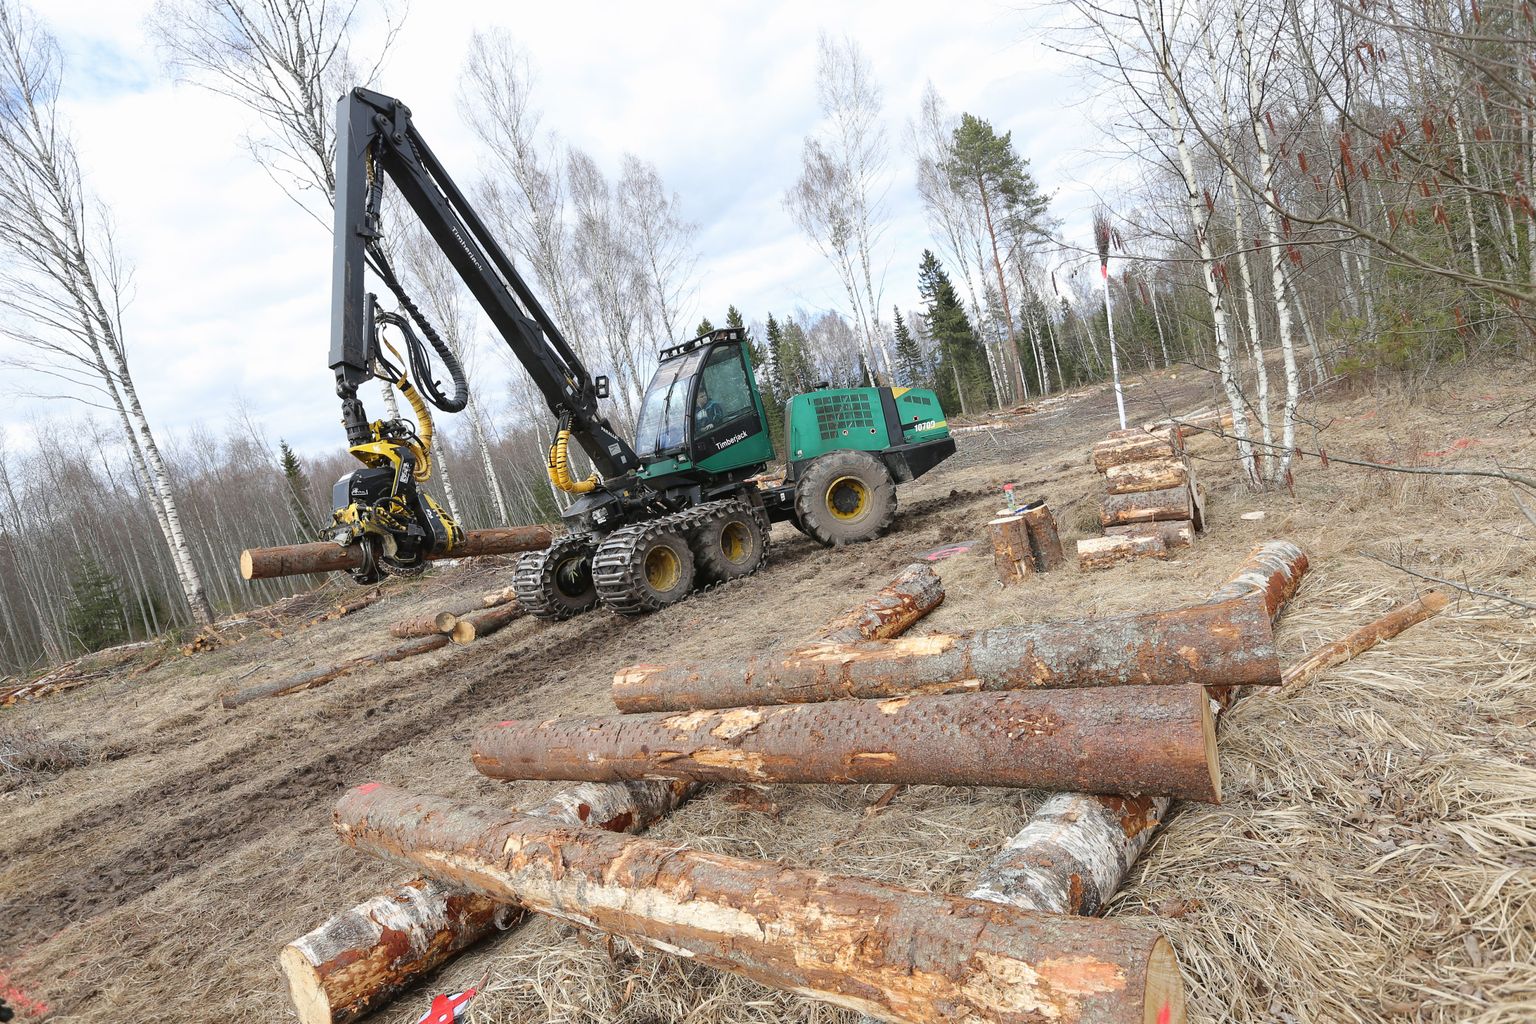 Värkse doktoritöö näitab, et Eesti metsanduses on innovatsioon võõras mõiste ja uuendused tulevad pigem reaktsioonina piirangutele.